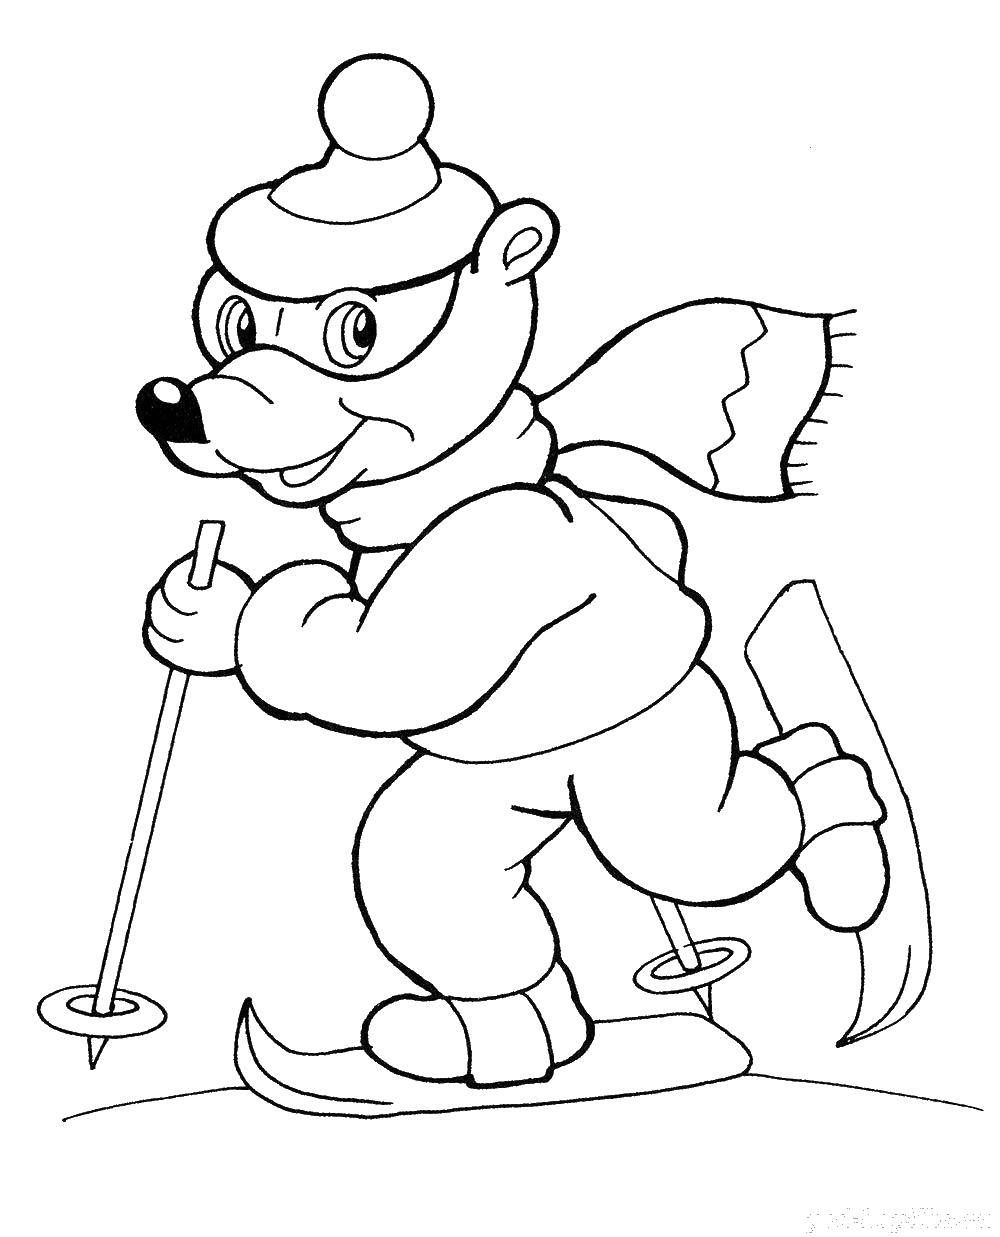 Название: Раскраска Микки на лыжах. Категория: Персонаж из мультфильма. Теги: микки, лыжи.